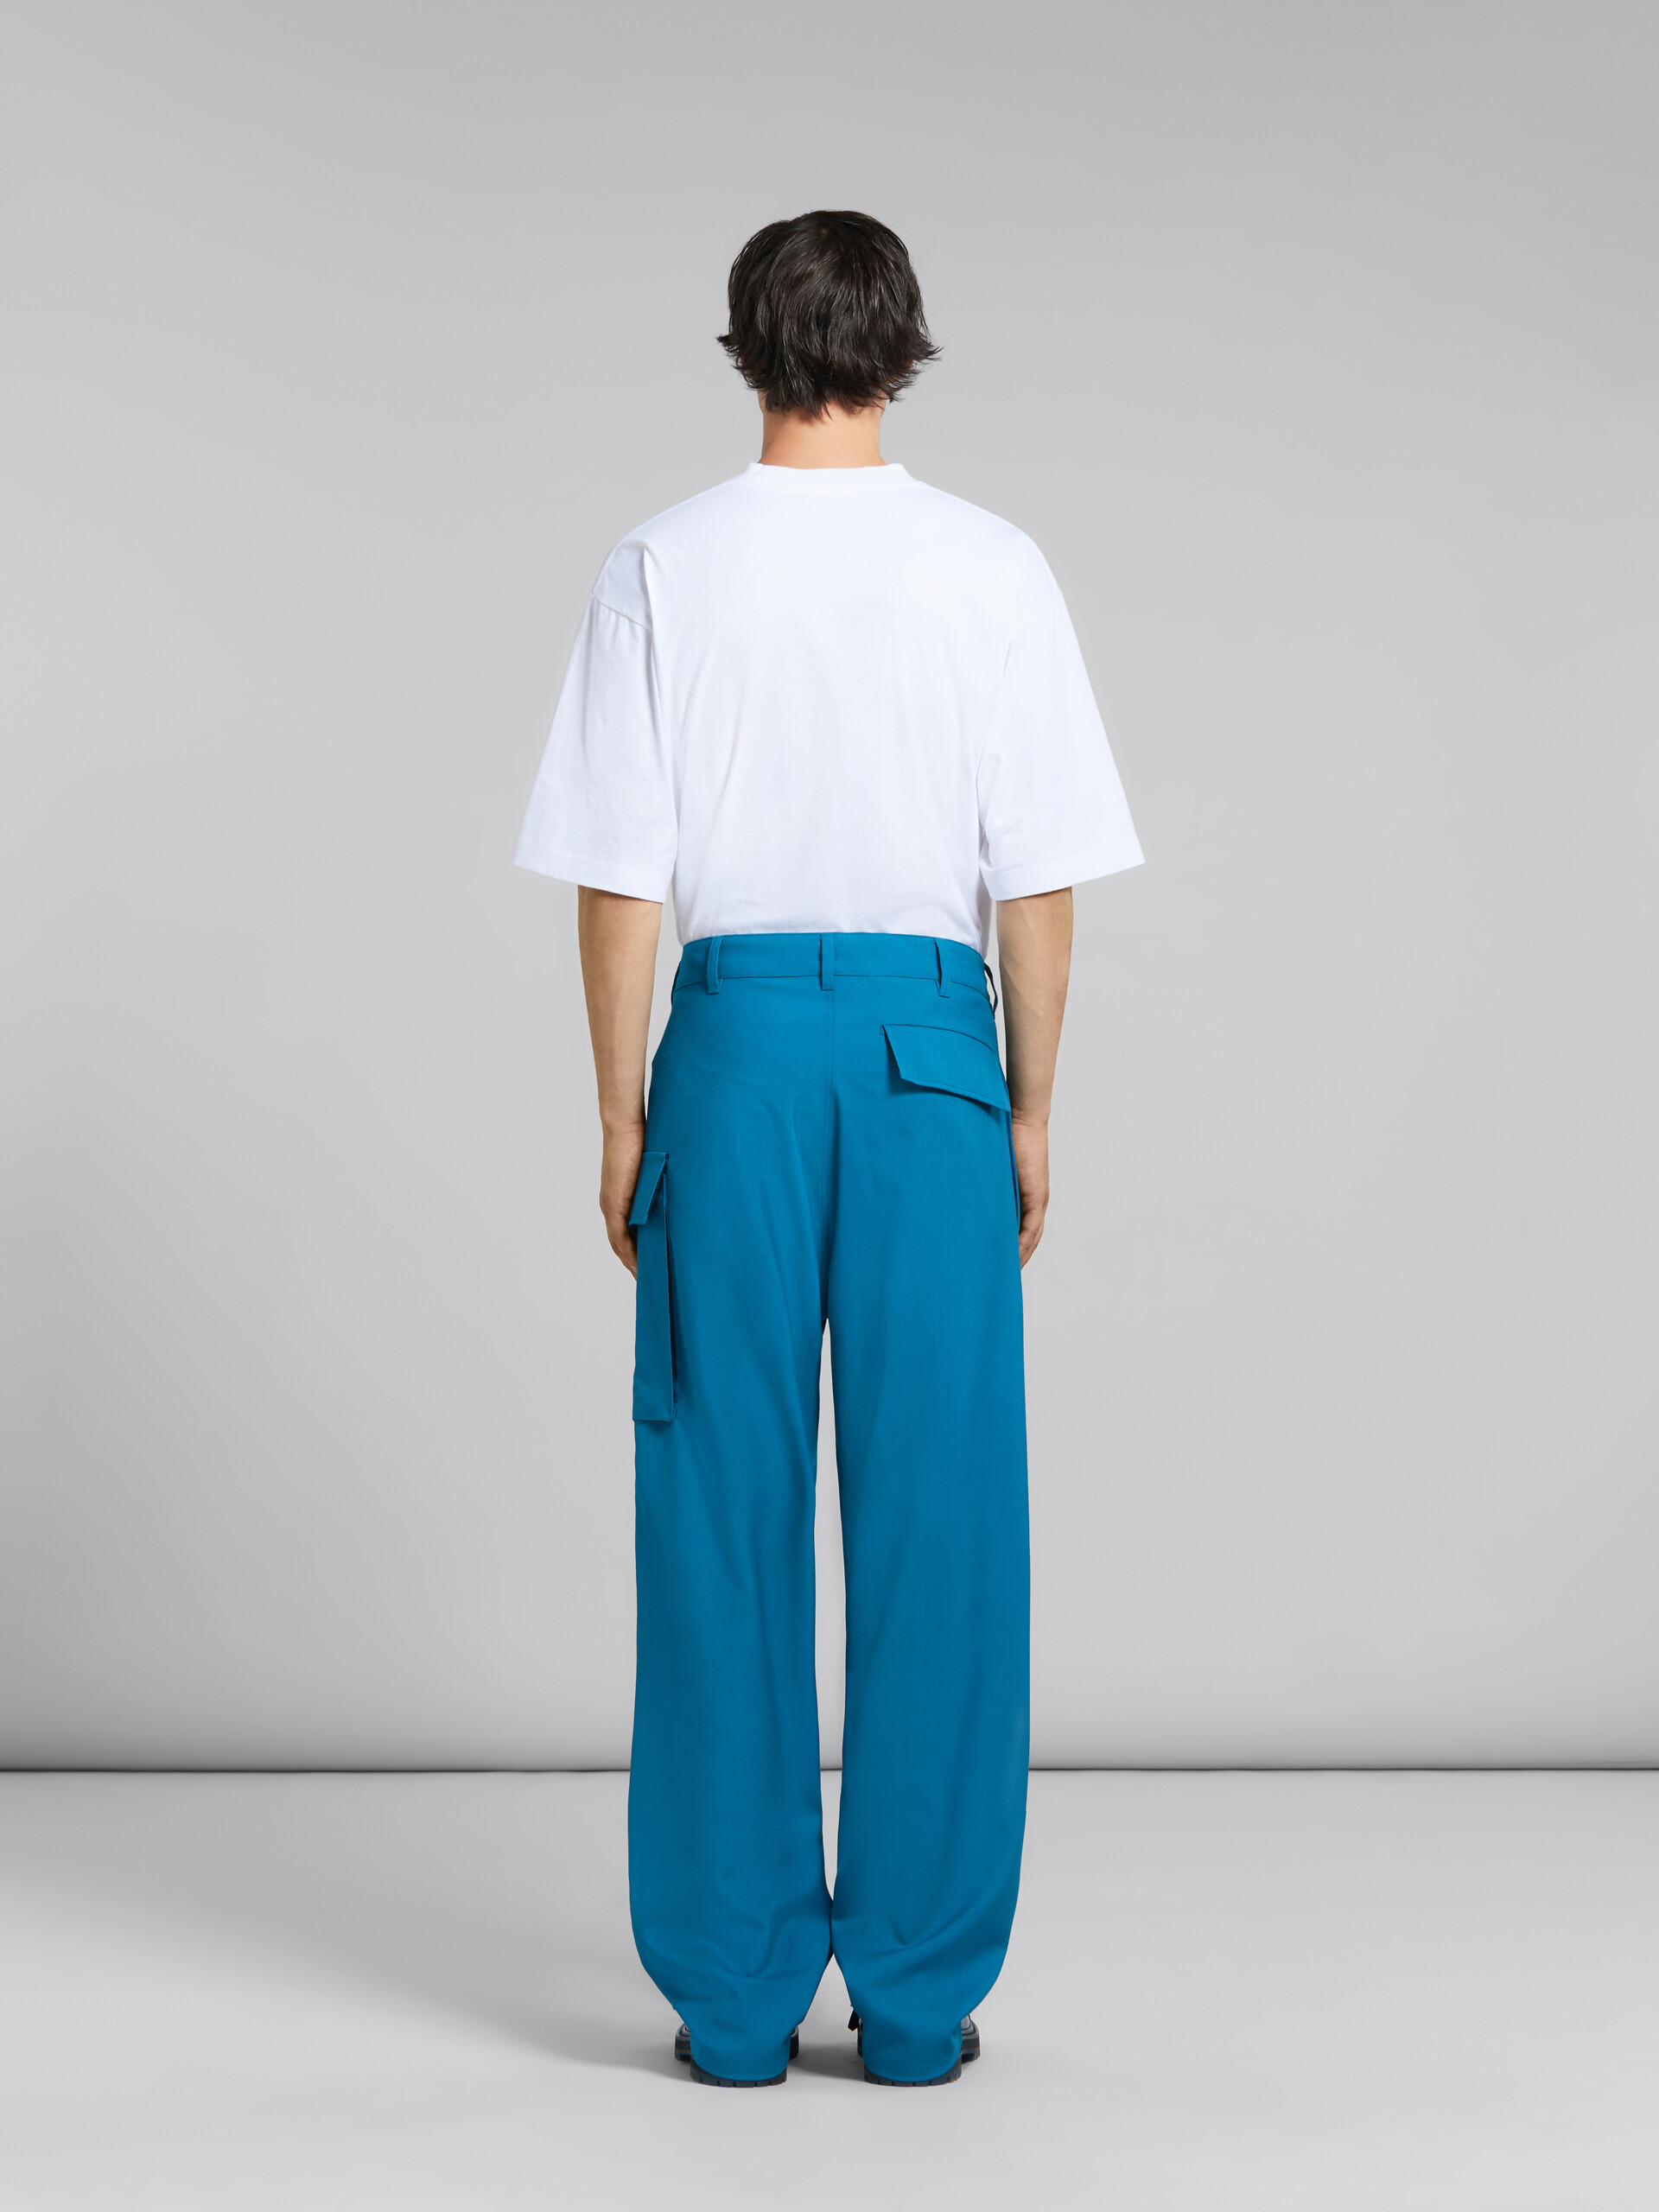 Pantalon en laine tropicale bleu sarcelle avec poche utilitaire - Pantalons - Image 3